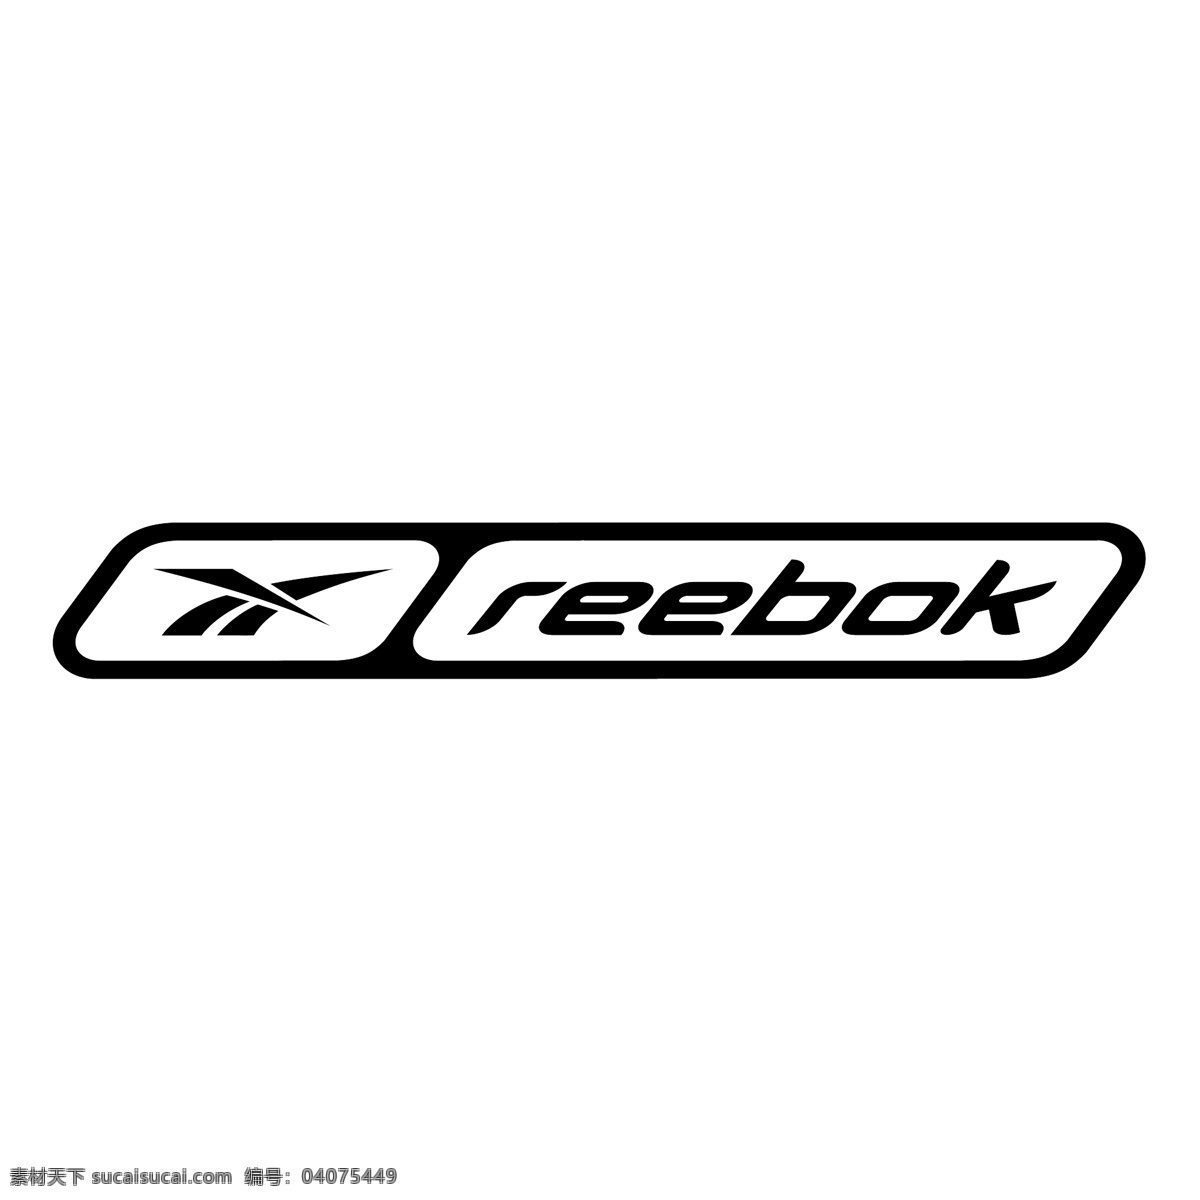 锐步免费下载 免费 锐步 logo 标志 psd源文件 logo设计